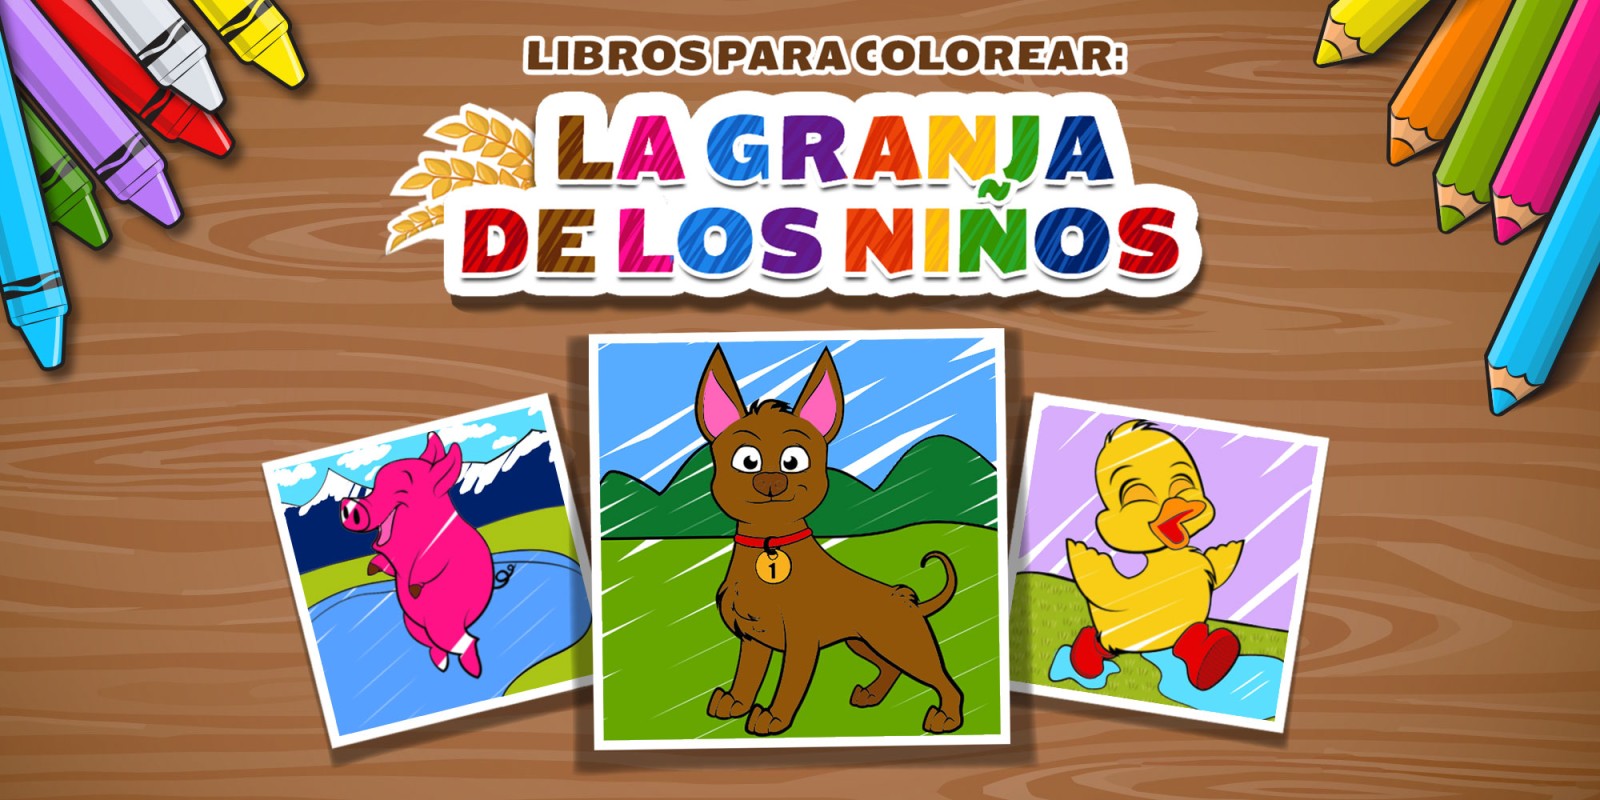 LIBROS PARA COLOREAR: LA GRANJA DE LOS NIÑOS (KIDS: FARM COLOURING)